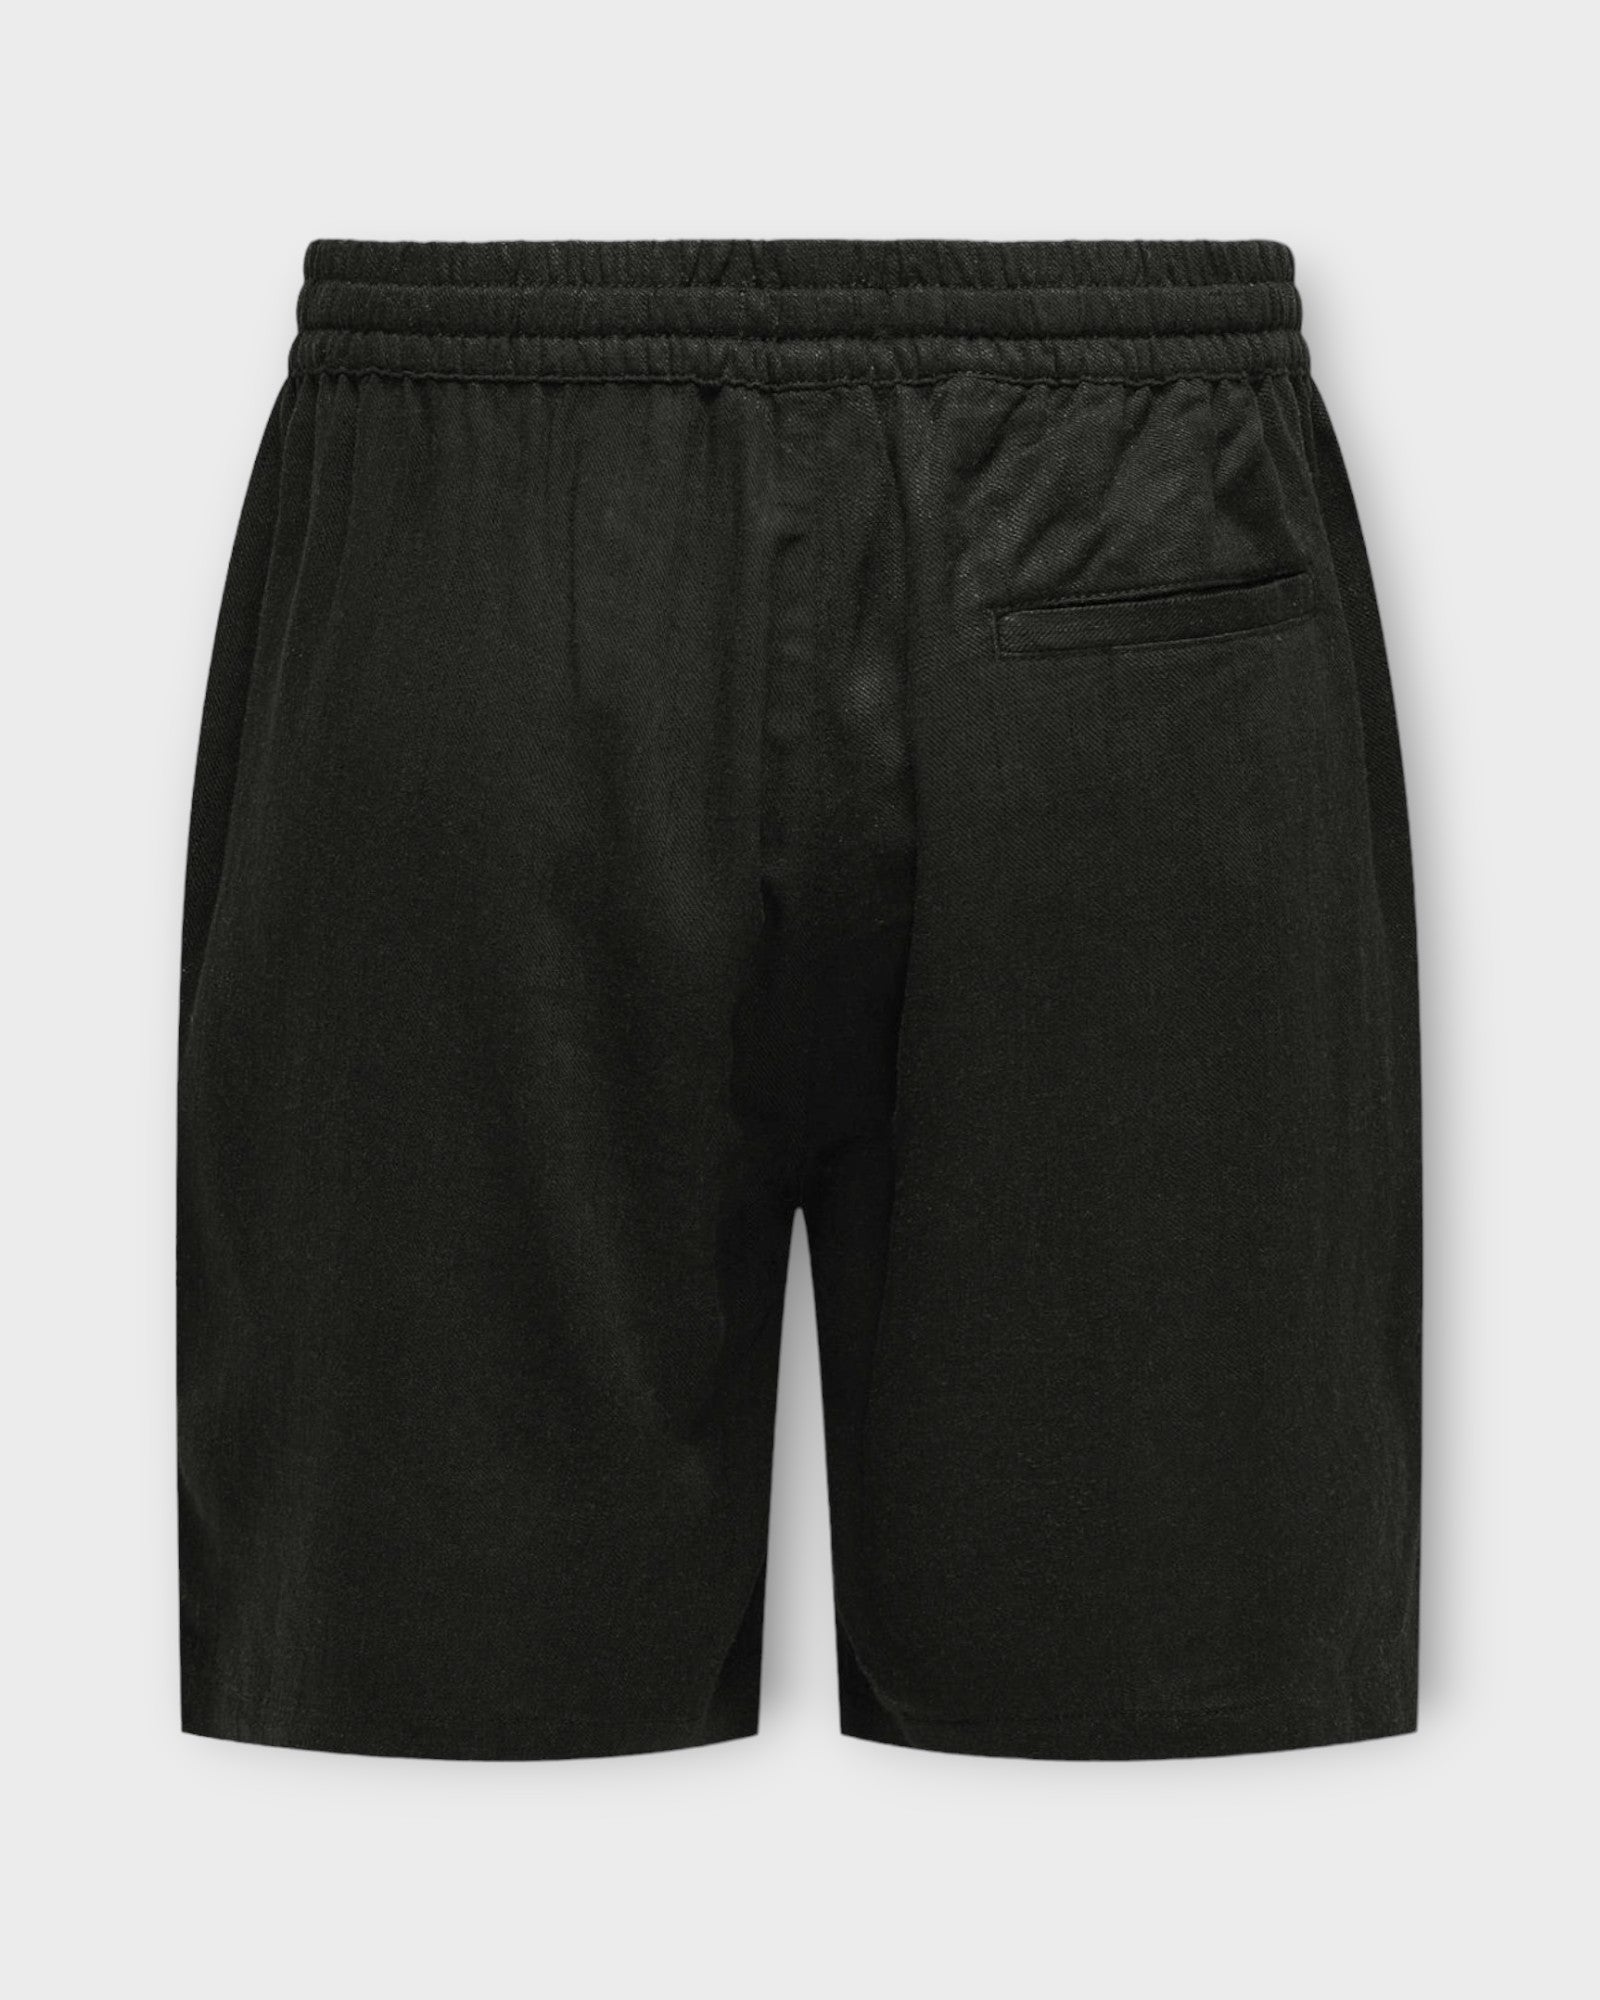 Only and Sons Tel Viscose Linen Shorts Black, sorte hør shorts til mænd. Her set bagfra.